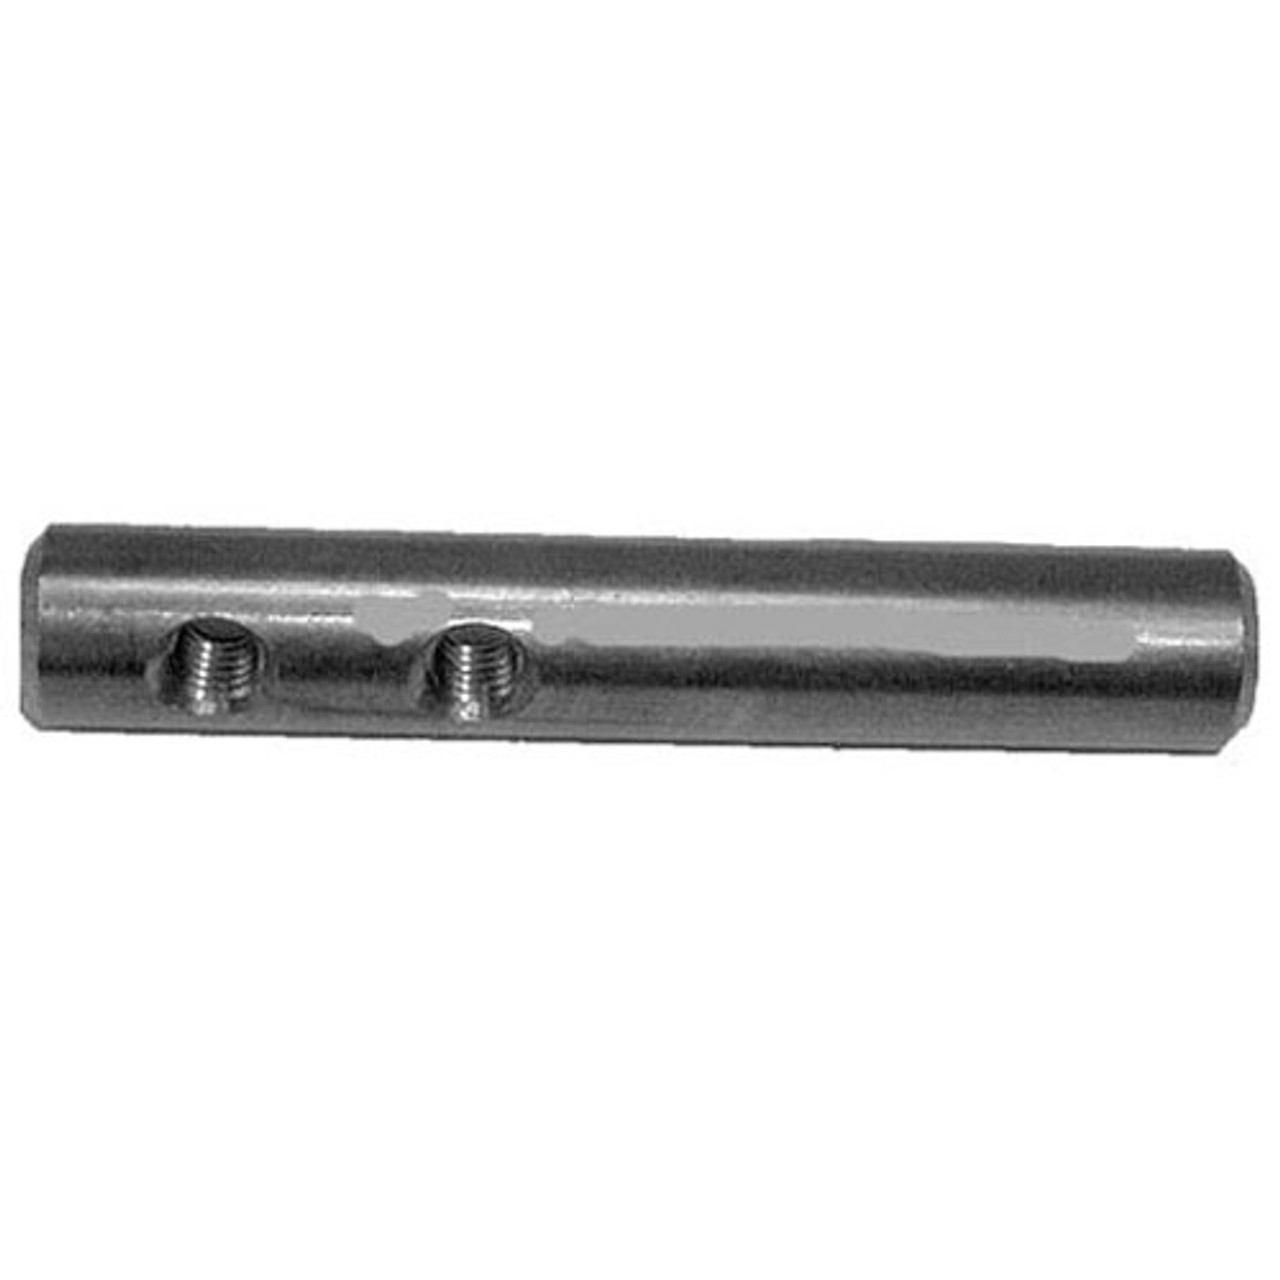 Hinge Pin - Replacement Part For Vulcan Hart 117862-9